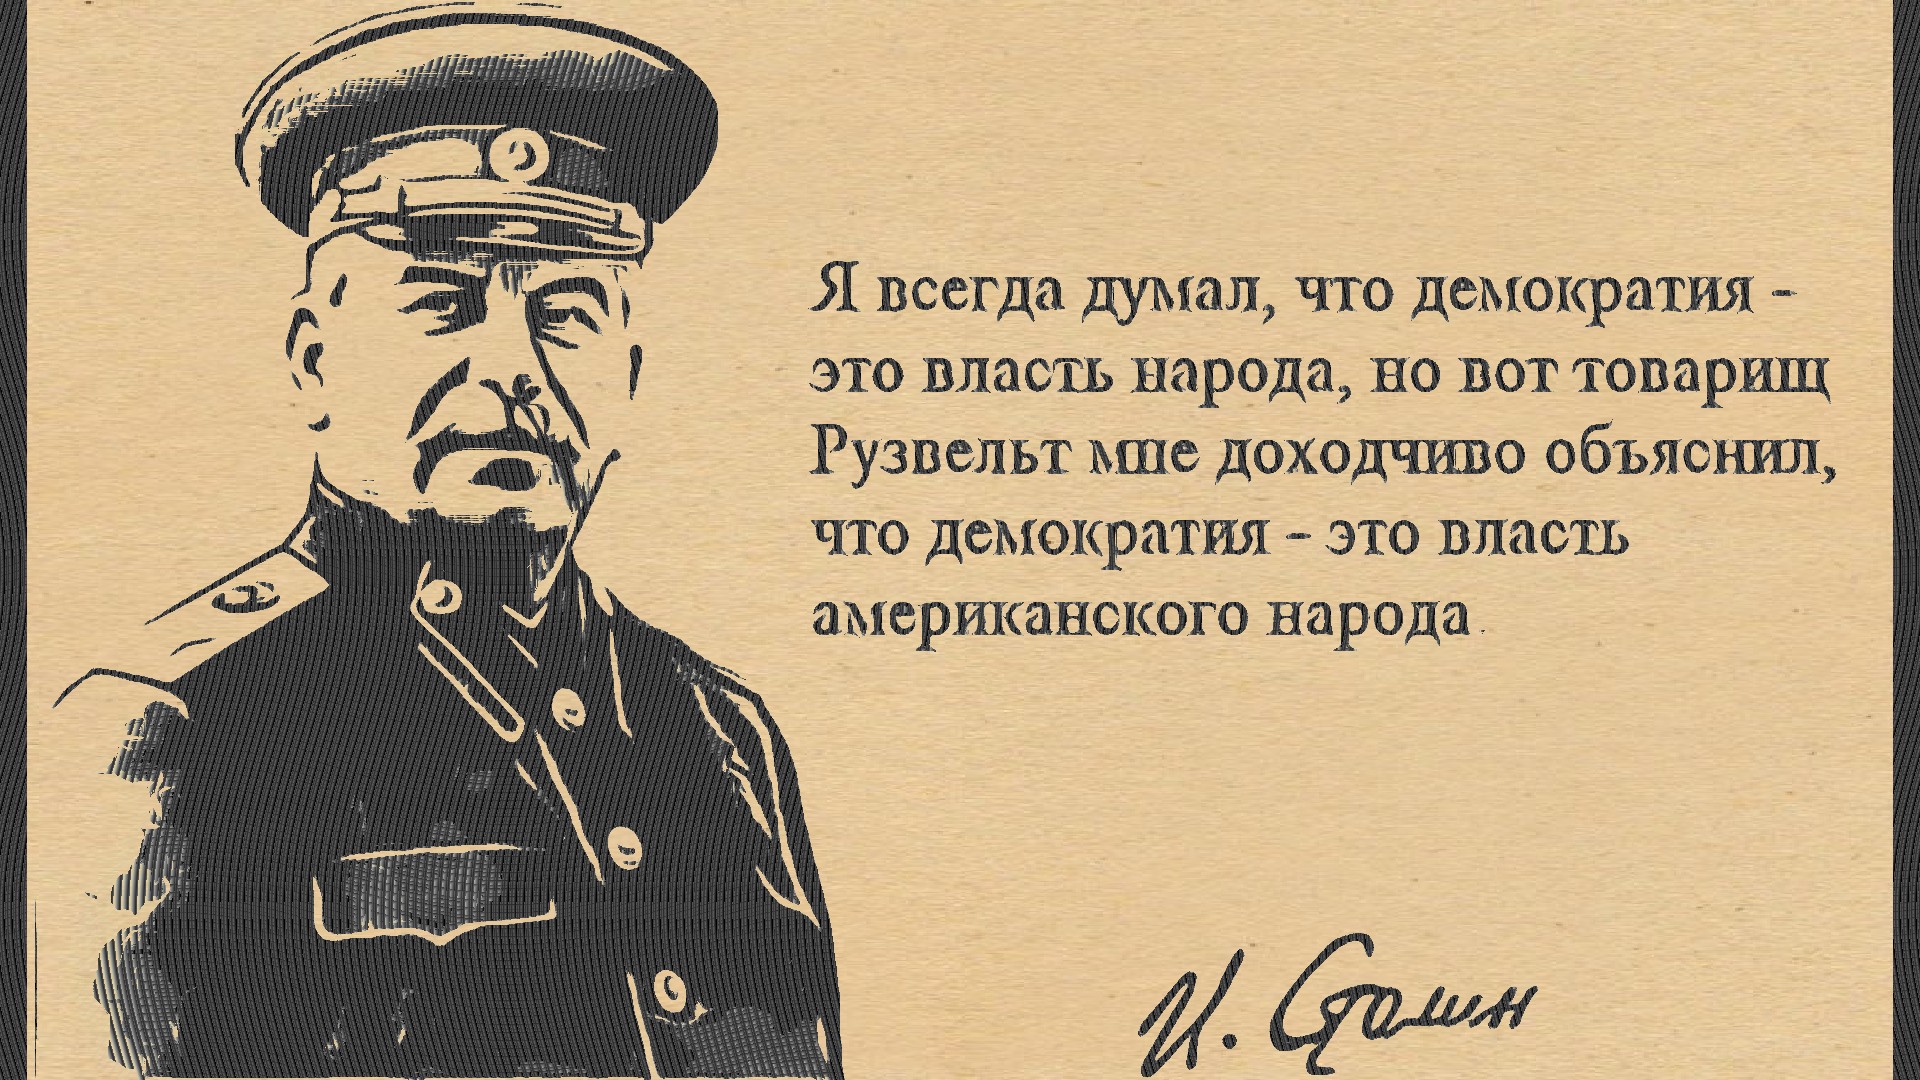 Чего в мире всегда 2. Демократия это власть американского народа. Сталин про димограмстию. Сталин о демократии американского народа. Сталин о демократии США.